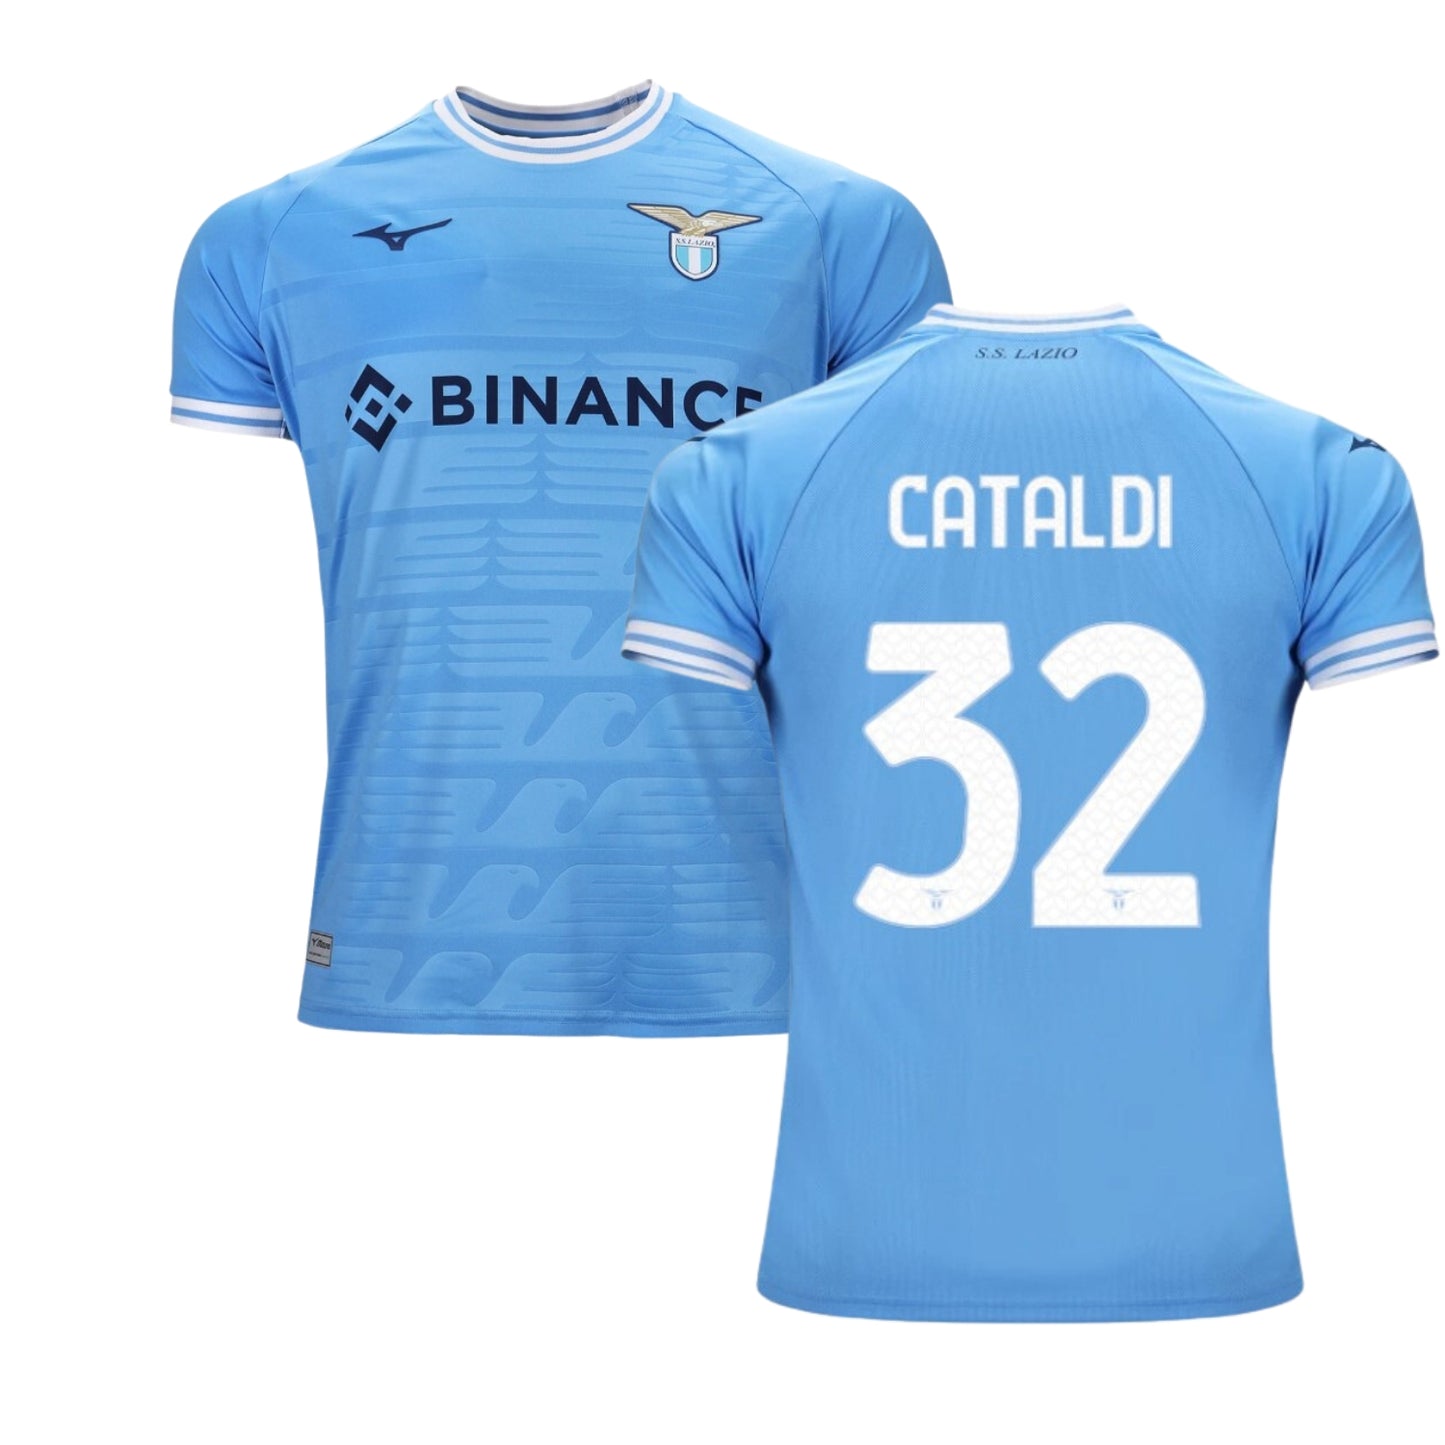 Danilo Cataldi Napoli 32 Jersey